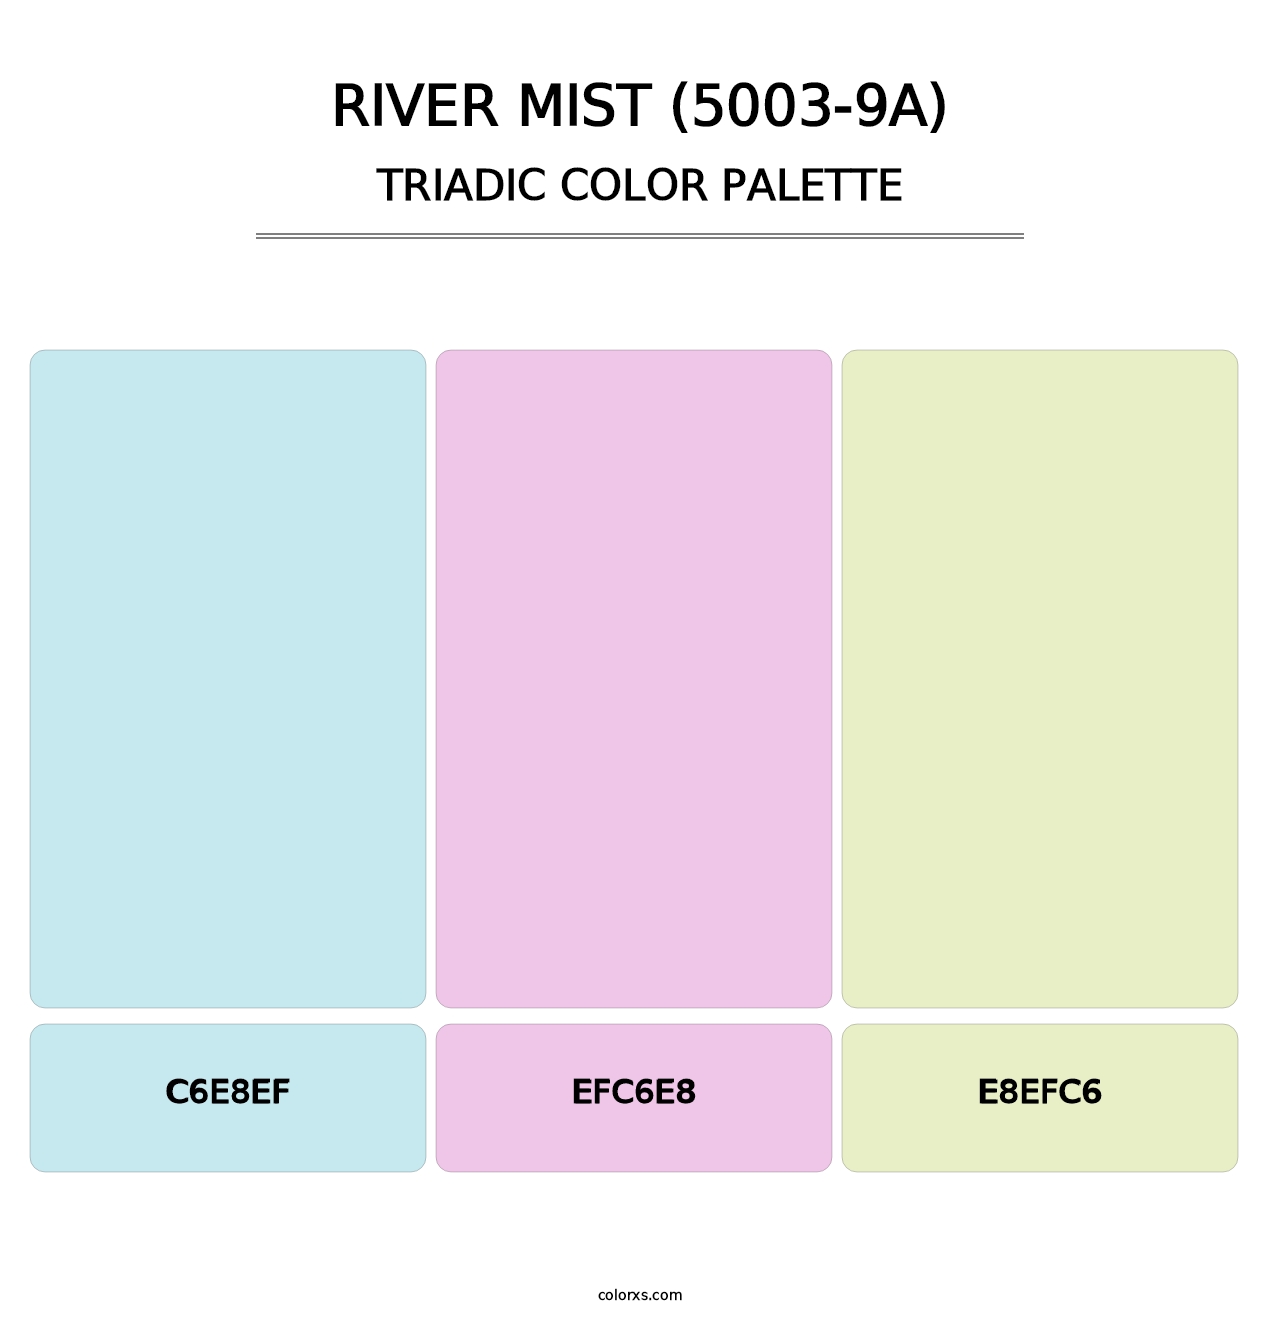 River Mist (5003-9A) - Triadic Color Palette